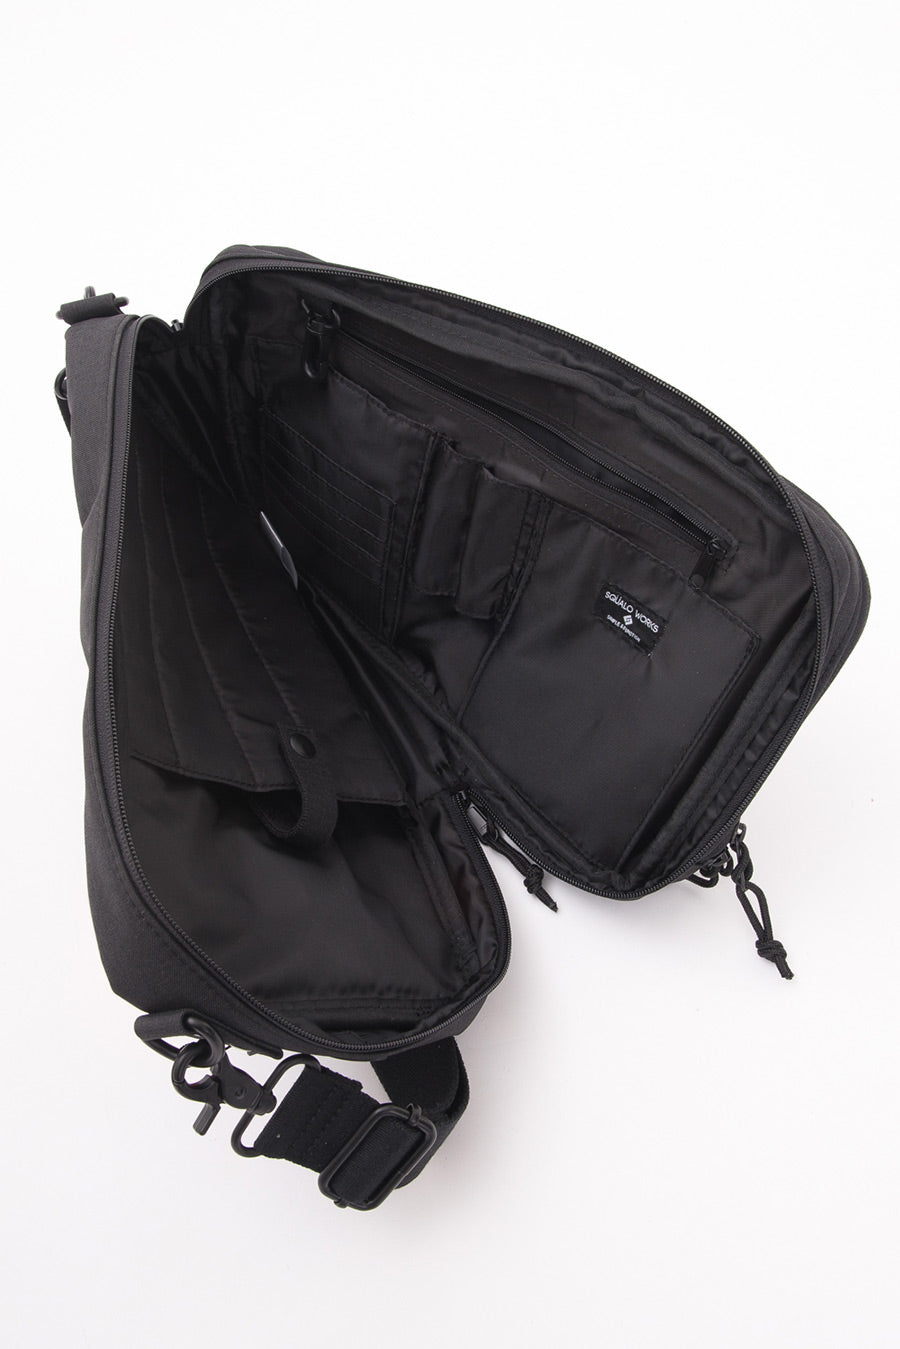 SQUALO WORKS スクアーロワーク MODESTO 2WAY SHOULDER BAG ショルダー バッグ カバン　鞄